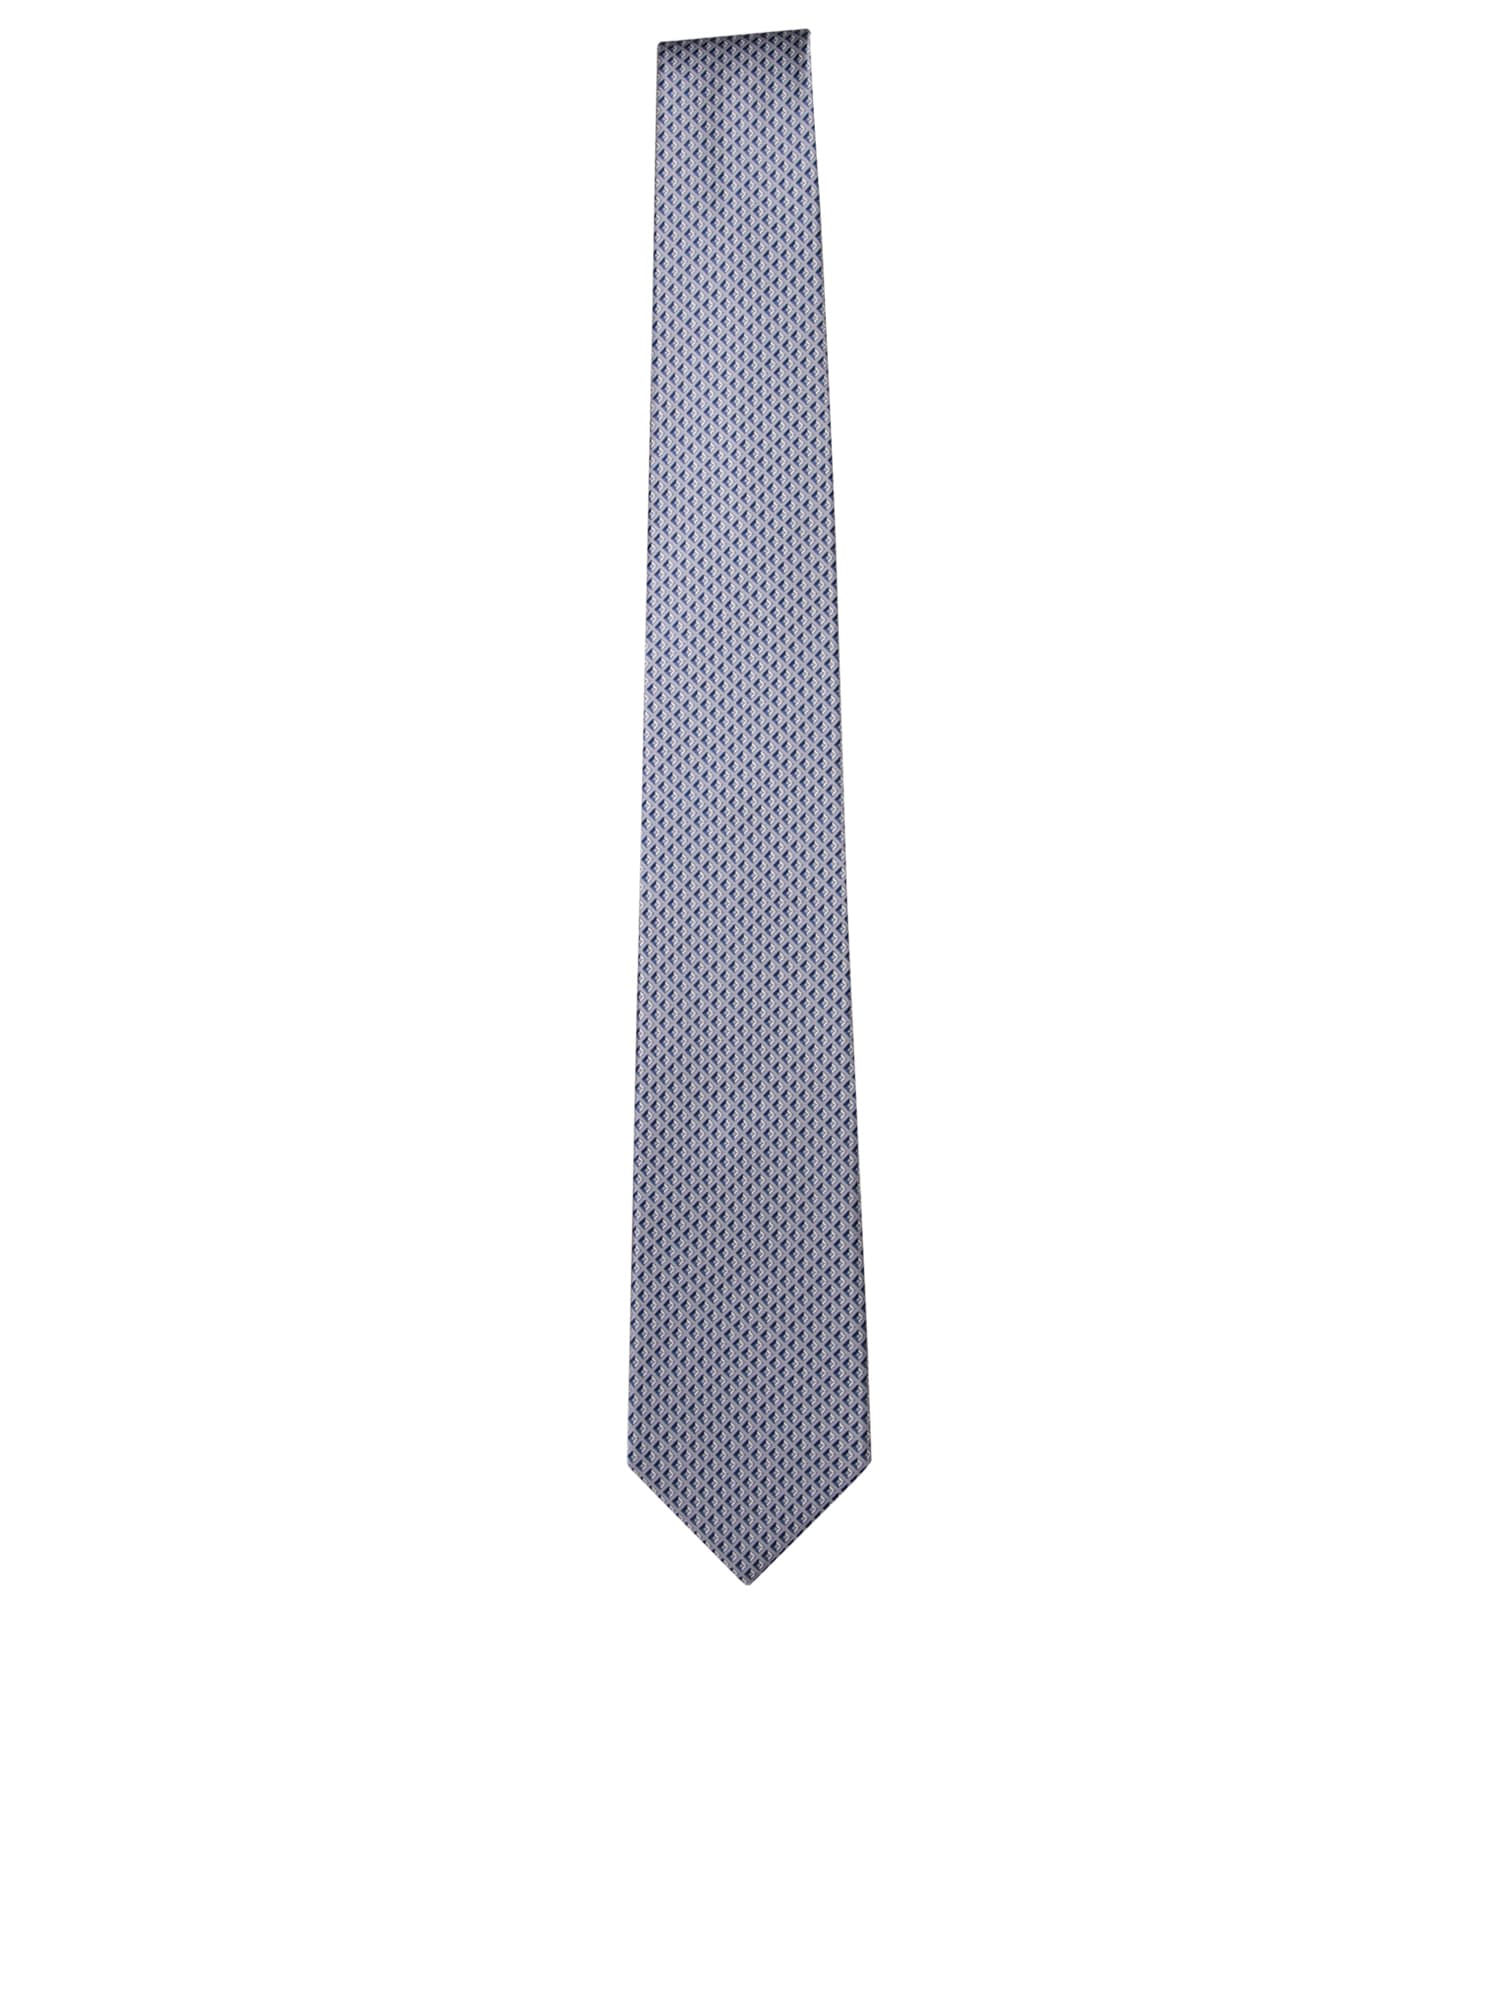 Rhombuses Pattern Dark Grey Tie